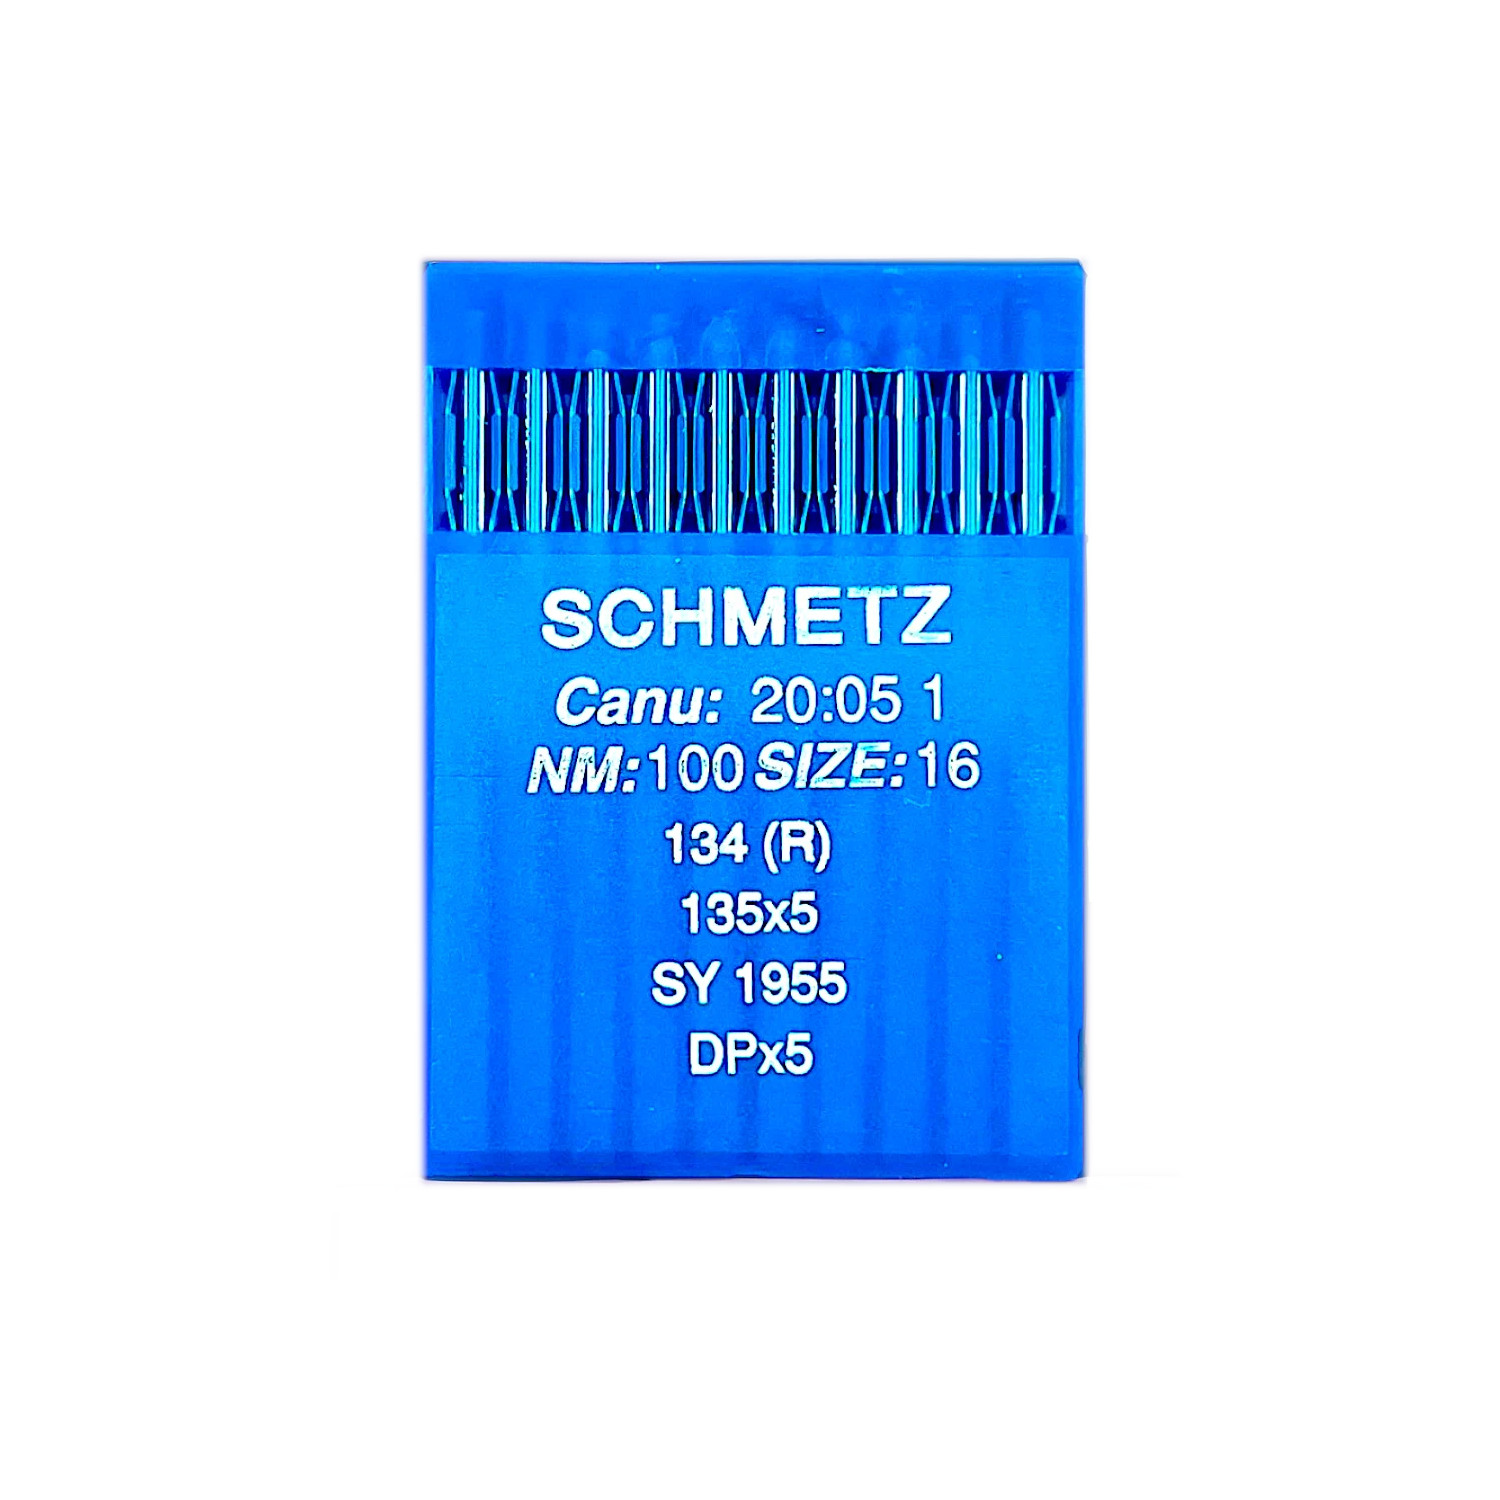 Иглы Schmetz для промышленных швейных машин DPx5 (134) R №100 толстая колба иглы schmetz для промышленных швейных машин dpx5 134 r 100 толстая колба